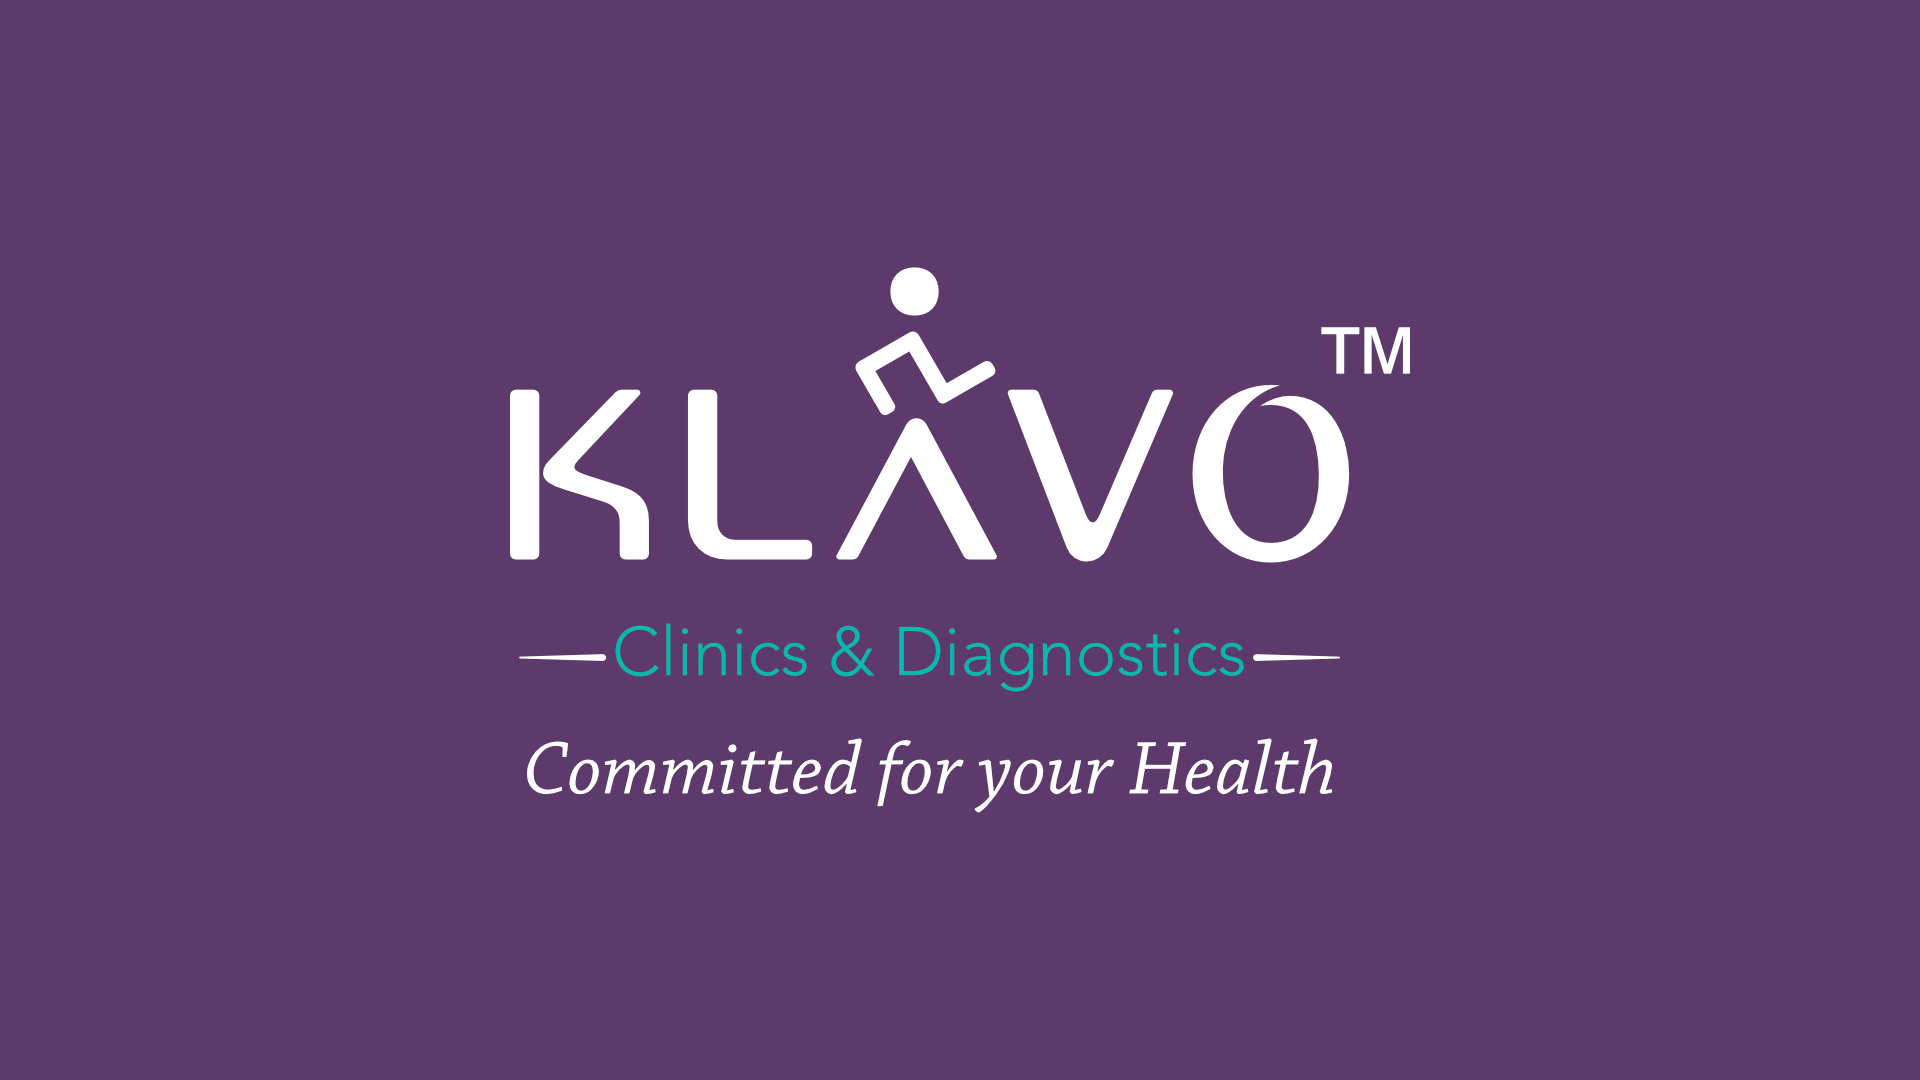 Klavo Clinics and Diagnostics